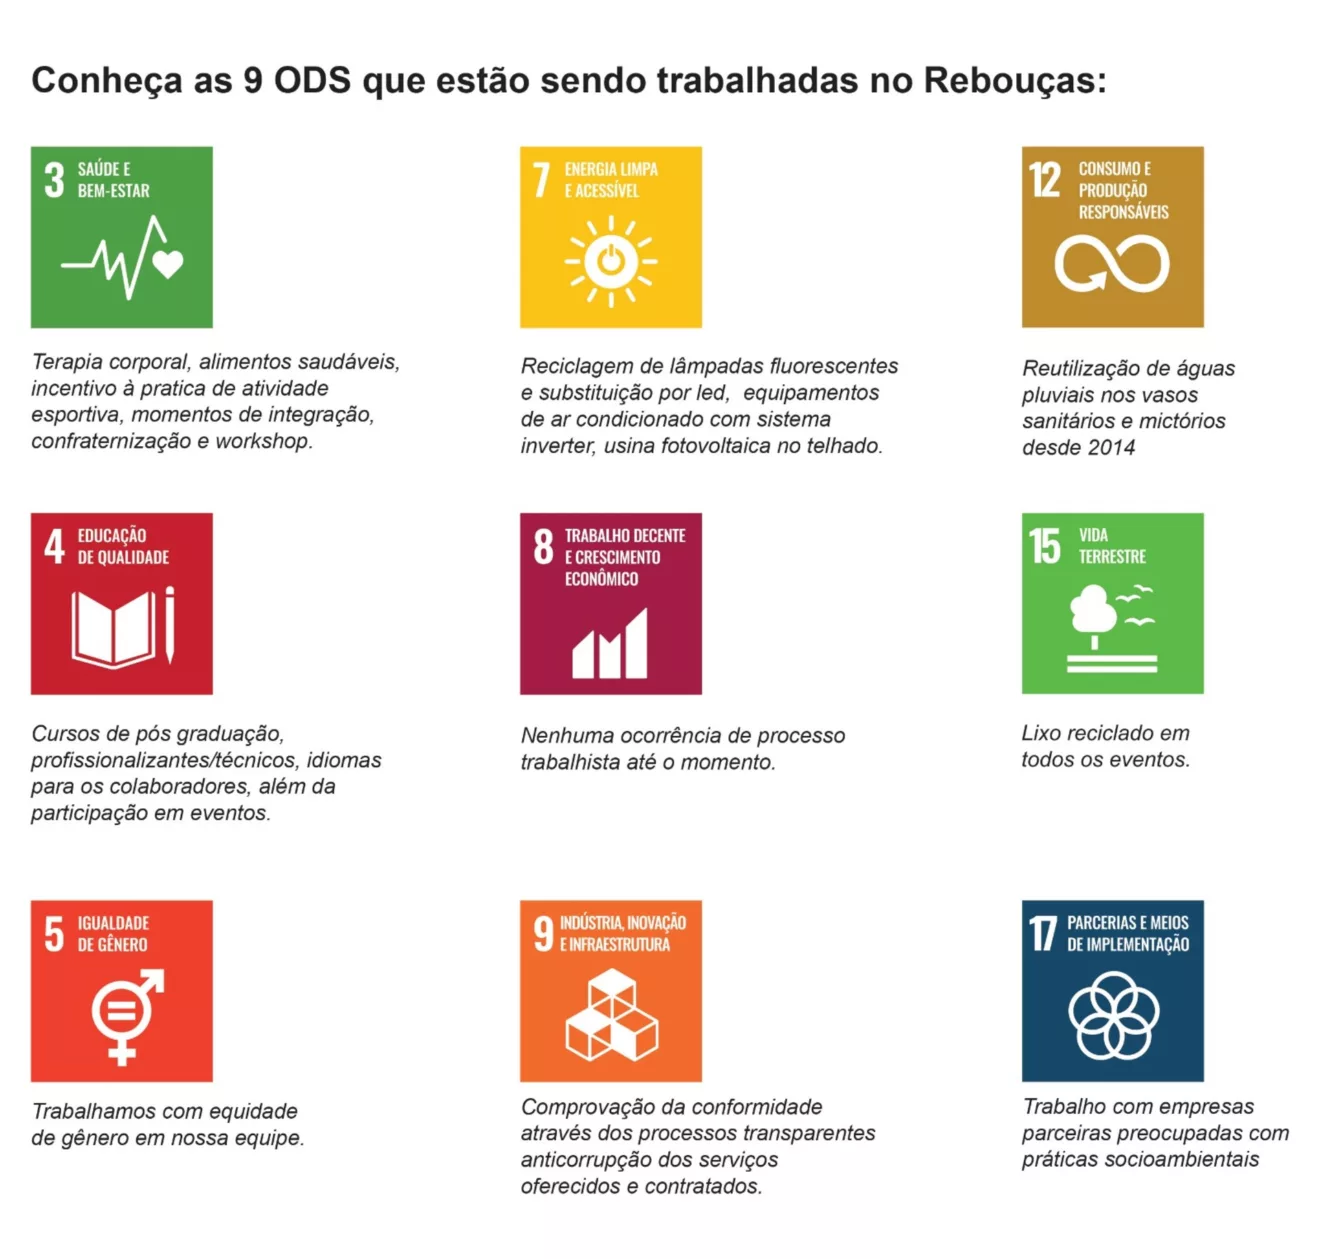 Envolvidos com 9 ODS – Objetivos de Desenvolvimento Sustentável, o Centro de Convenções Rebouças anuncia seus avanços na integração de práticas ESG (Ambientais, Sociais e de Governança) em seu modelo de negócio.